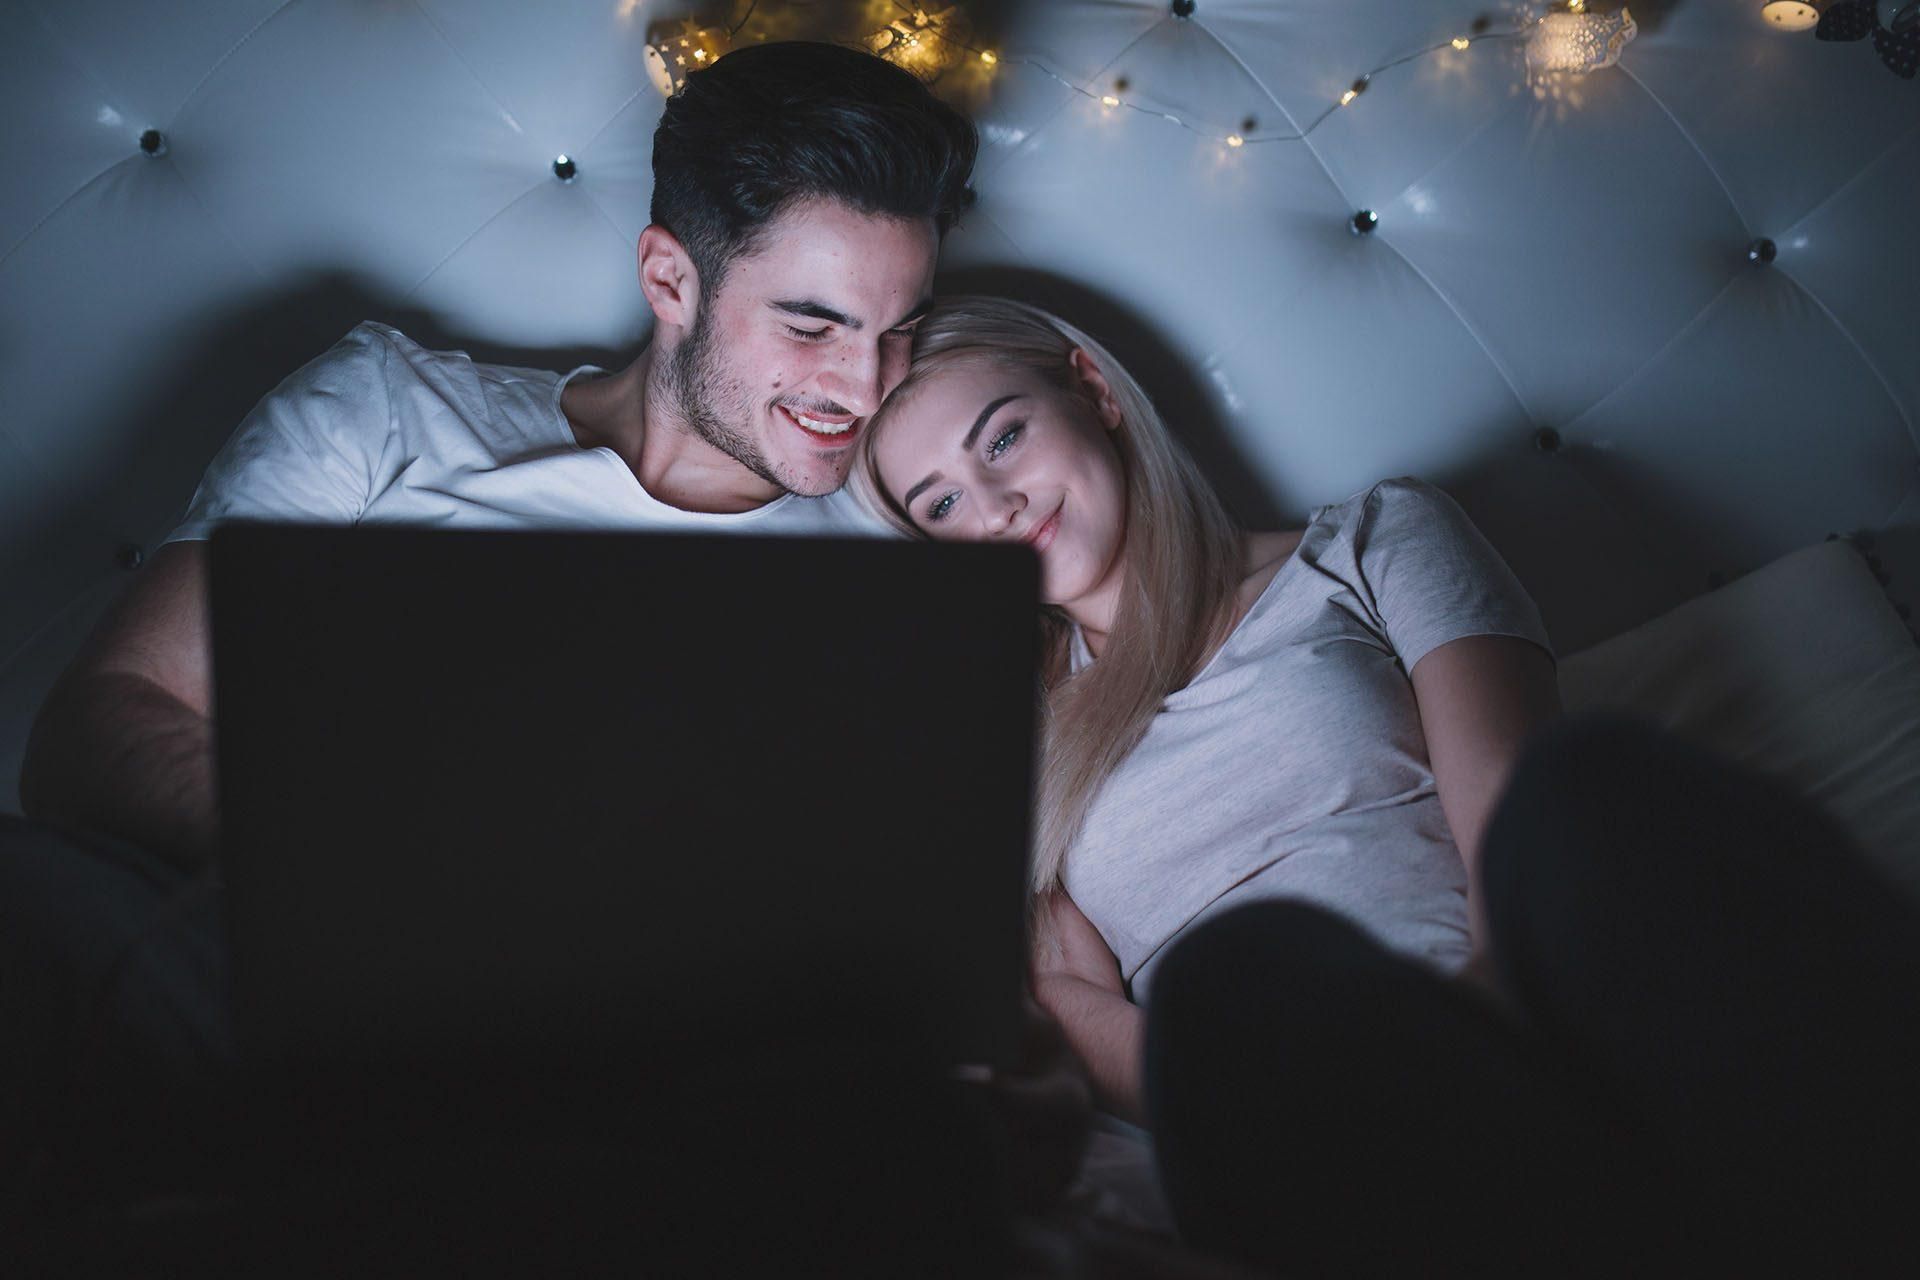 Стоит ли смотреть порно вместе с партнером